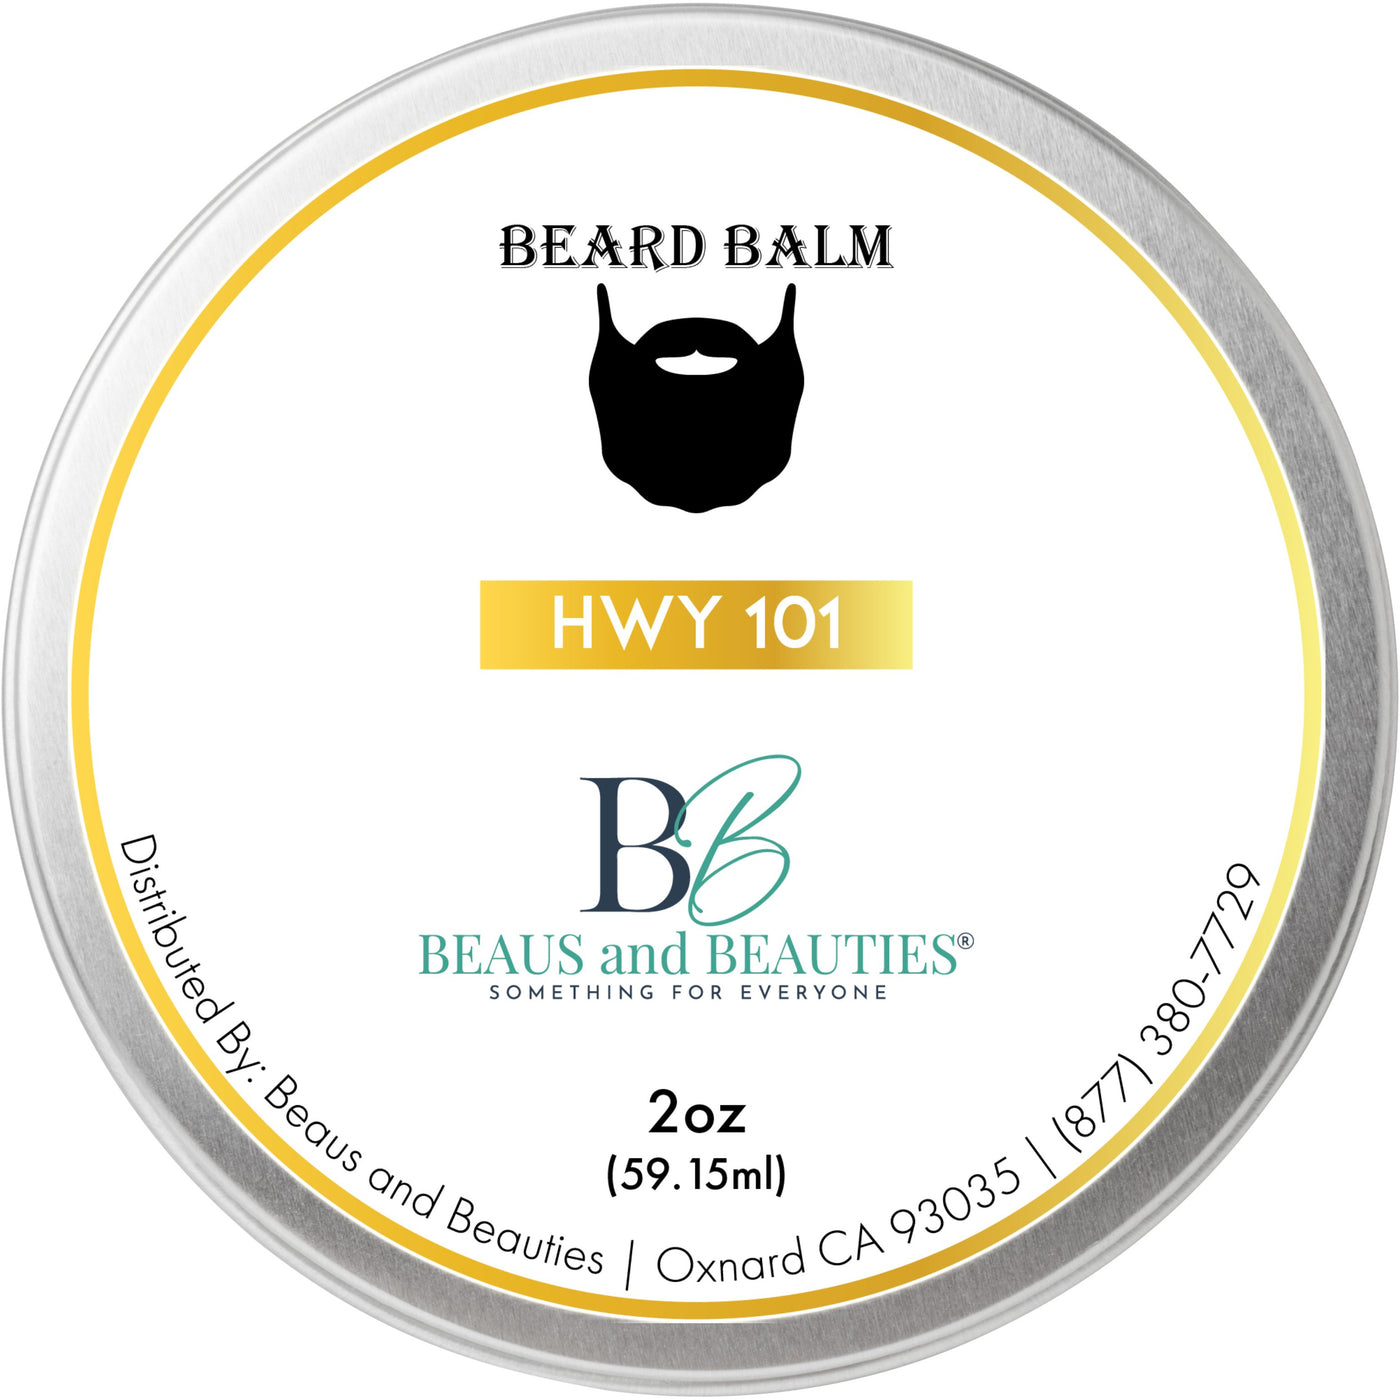 2 oz Beard Balm HWY 101